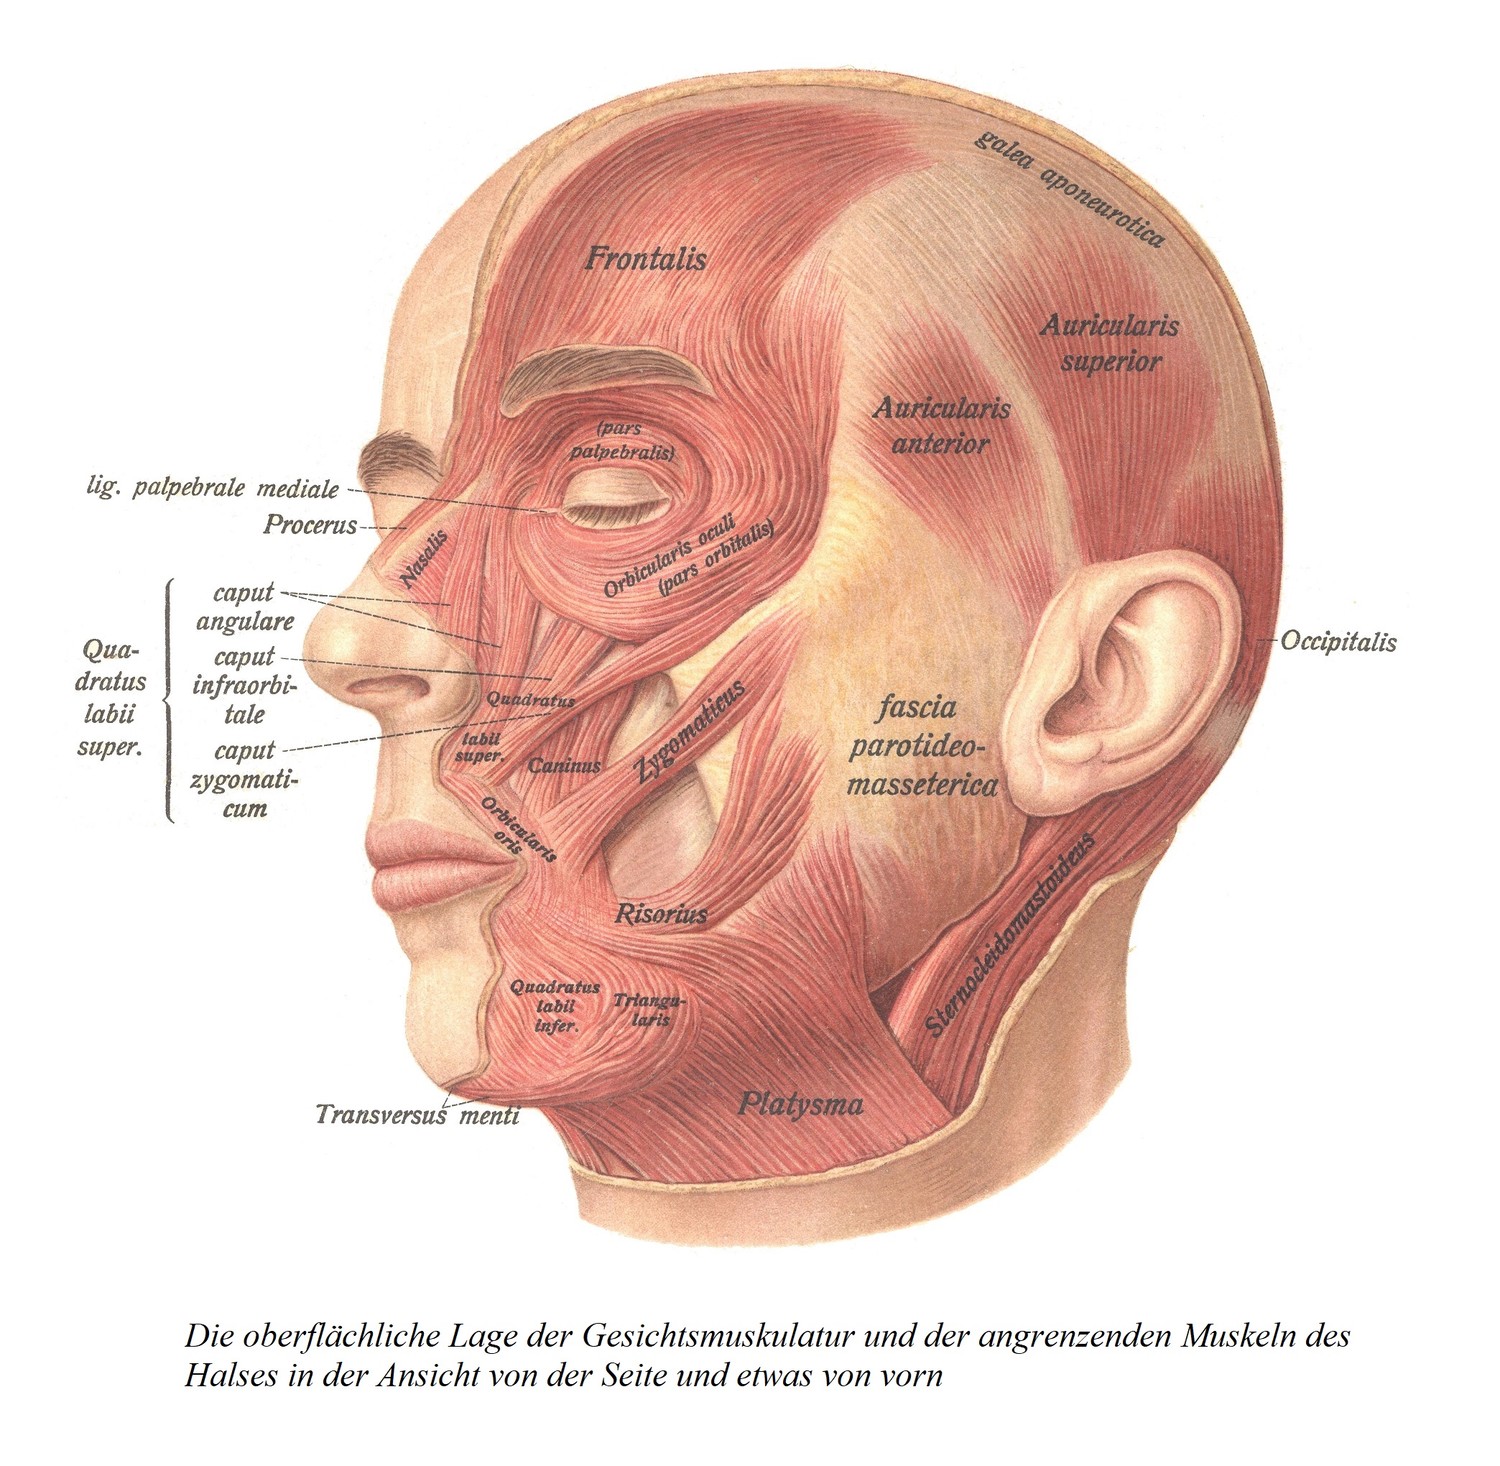 Поверхностное расположение мышц лица и прилежащих к ним мышц шеи, если смотреть сбоку и немного спереди